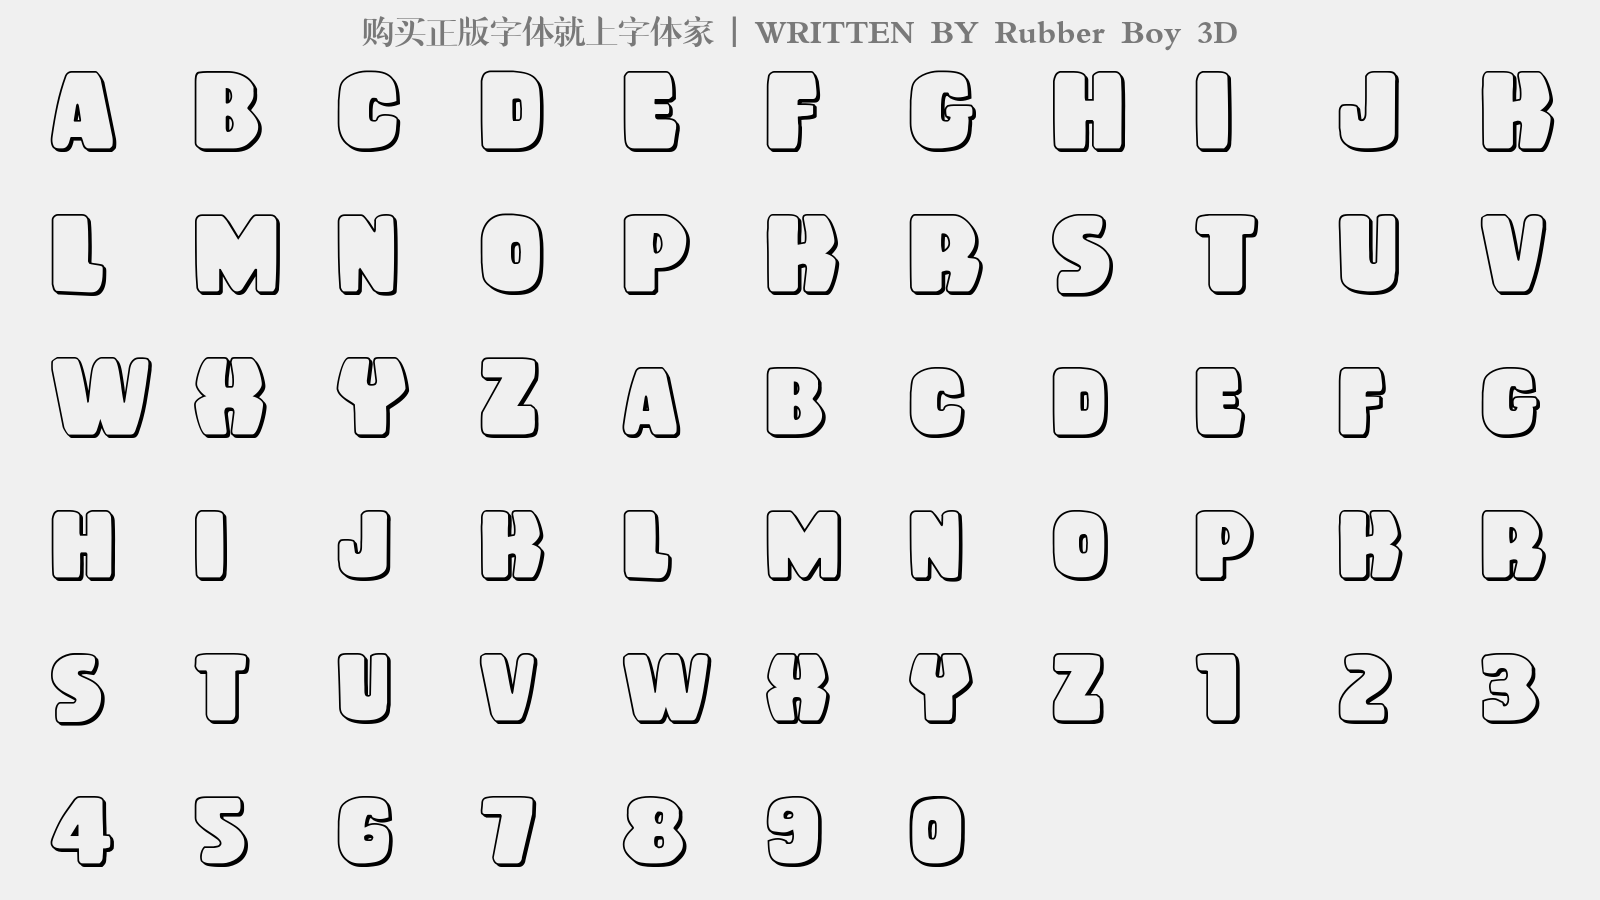 Rubber Boy 3D - 大写字母/小写字母/数字